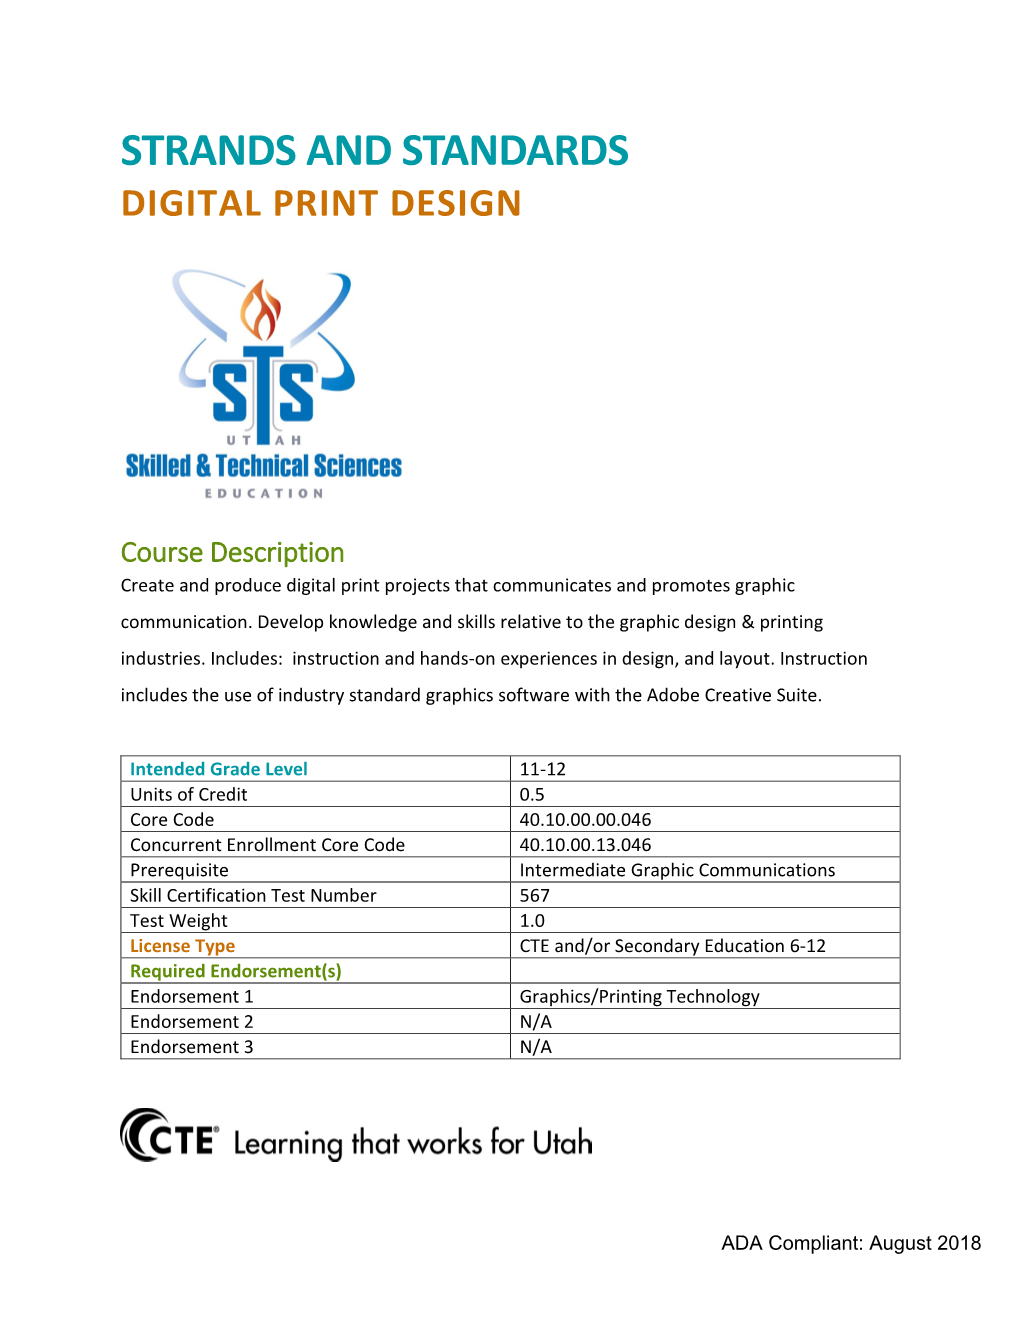 Digital Print Design Strands and Standards